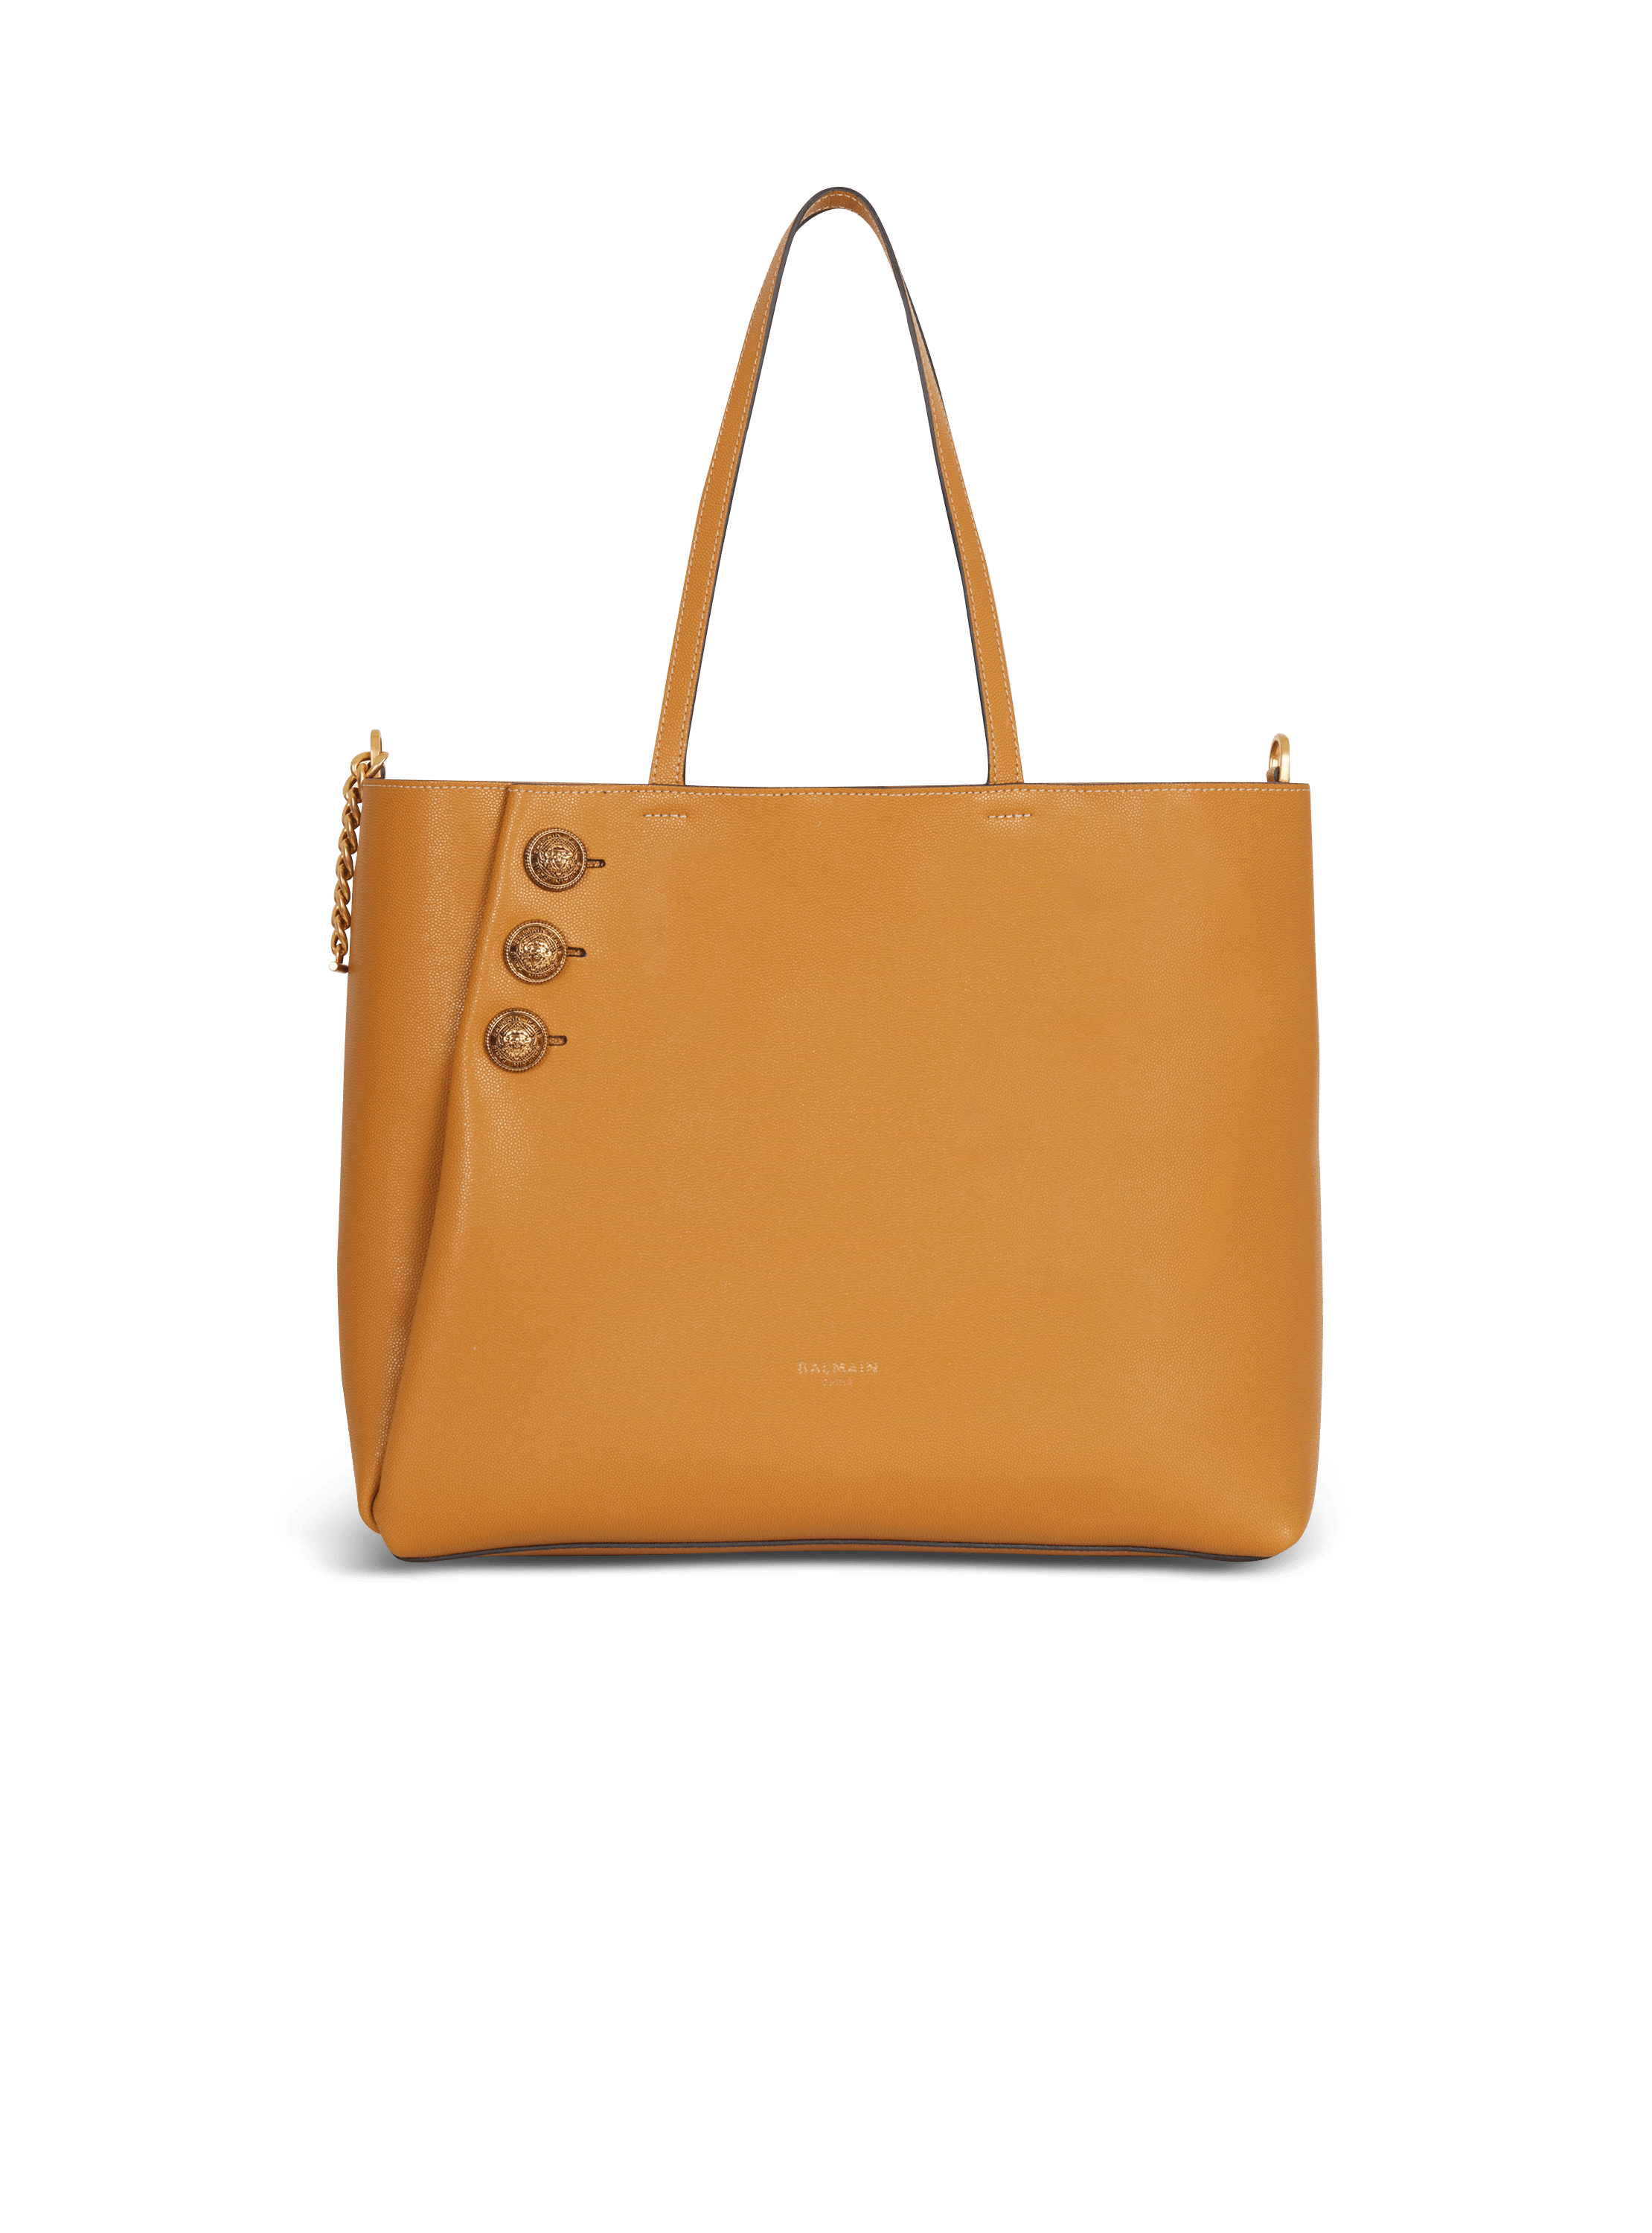 Emblème grained leather tote bag